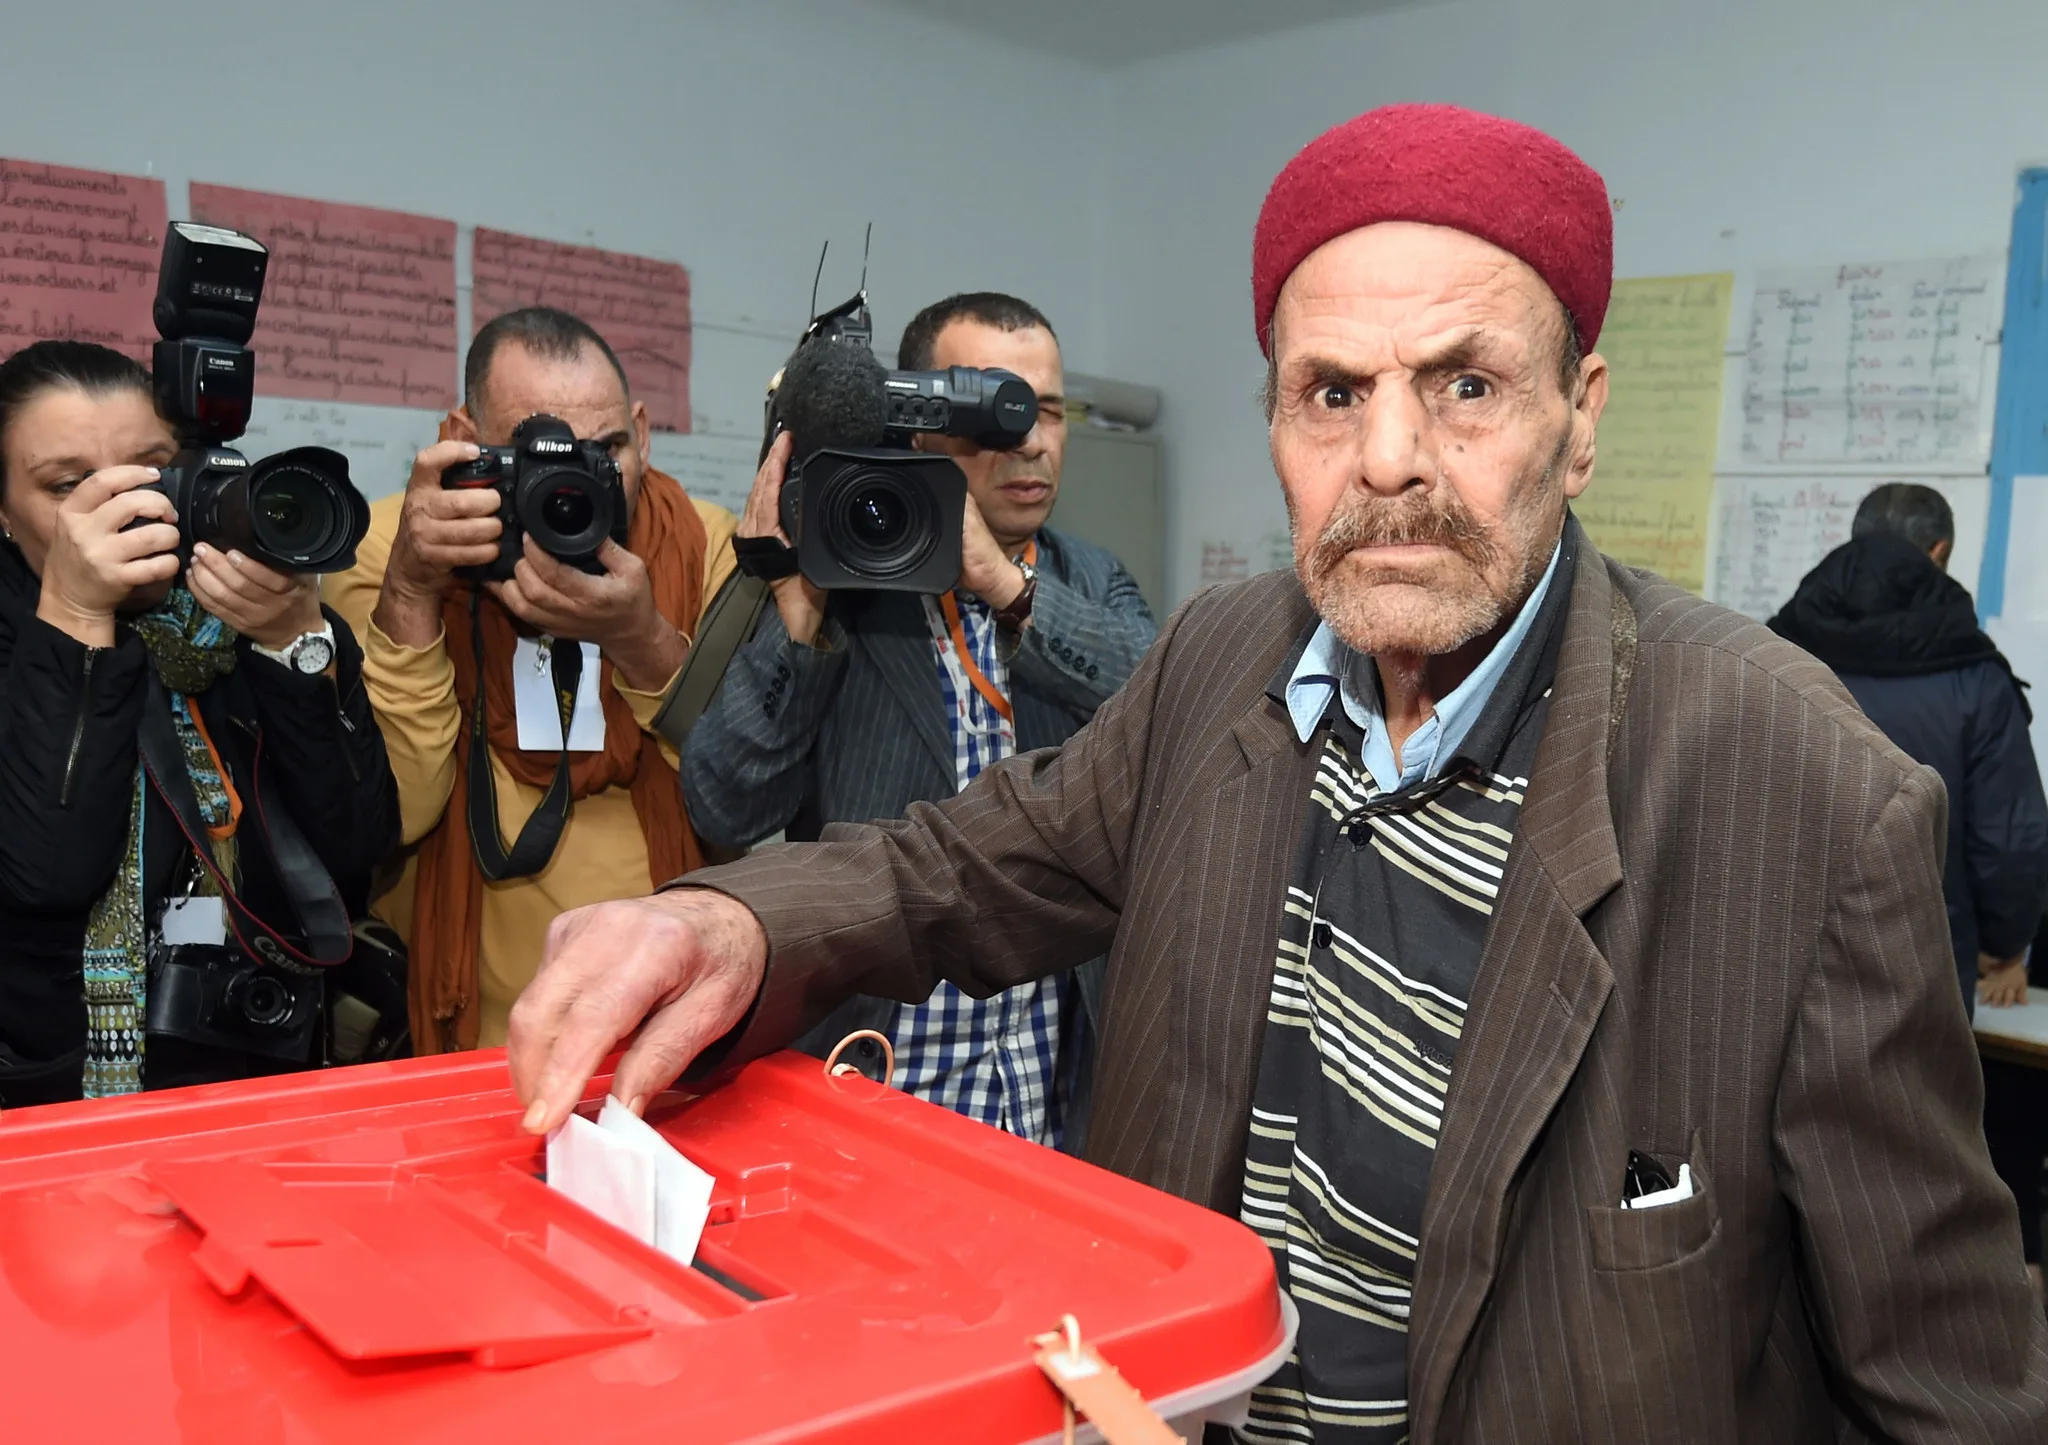 la-fg-tunisia-election-20141123